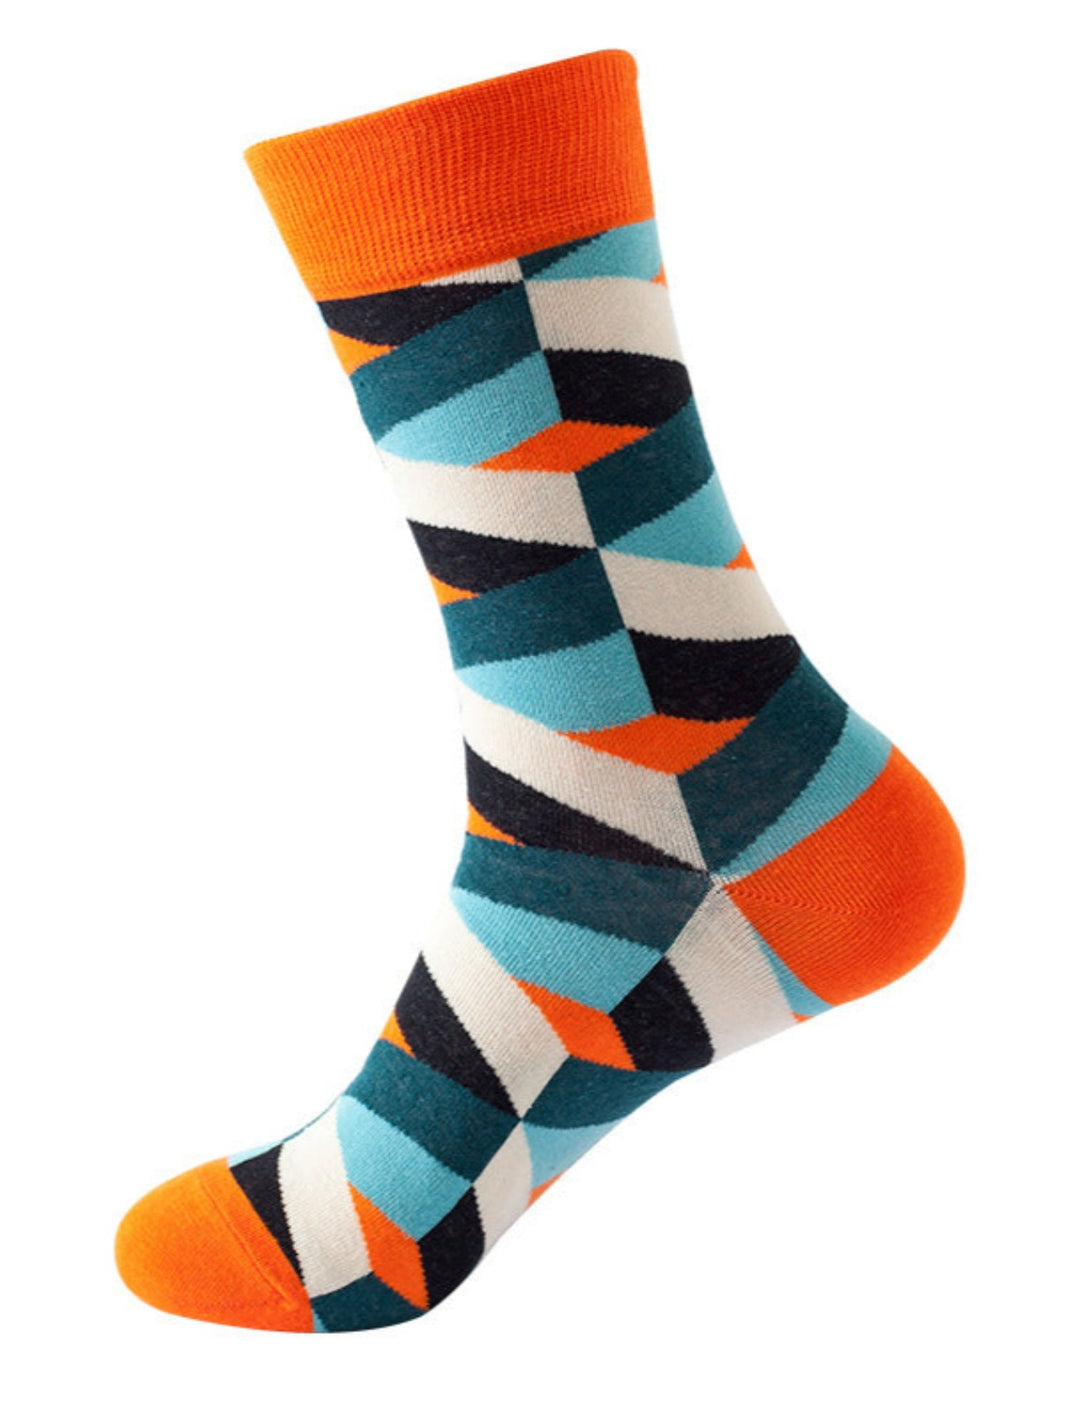 BEEMEN Happy Rhomby Socken 1 Paar